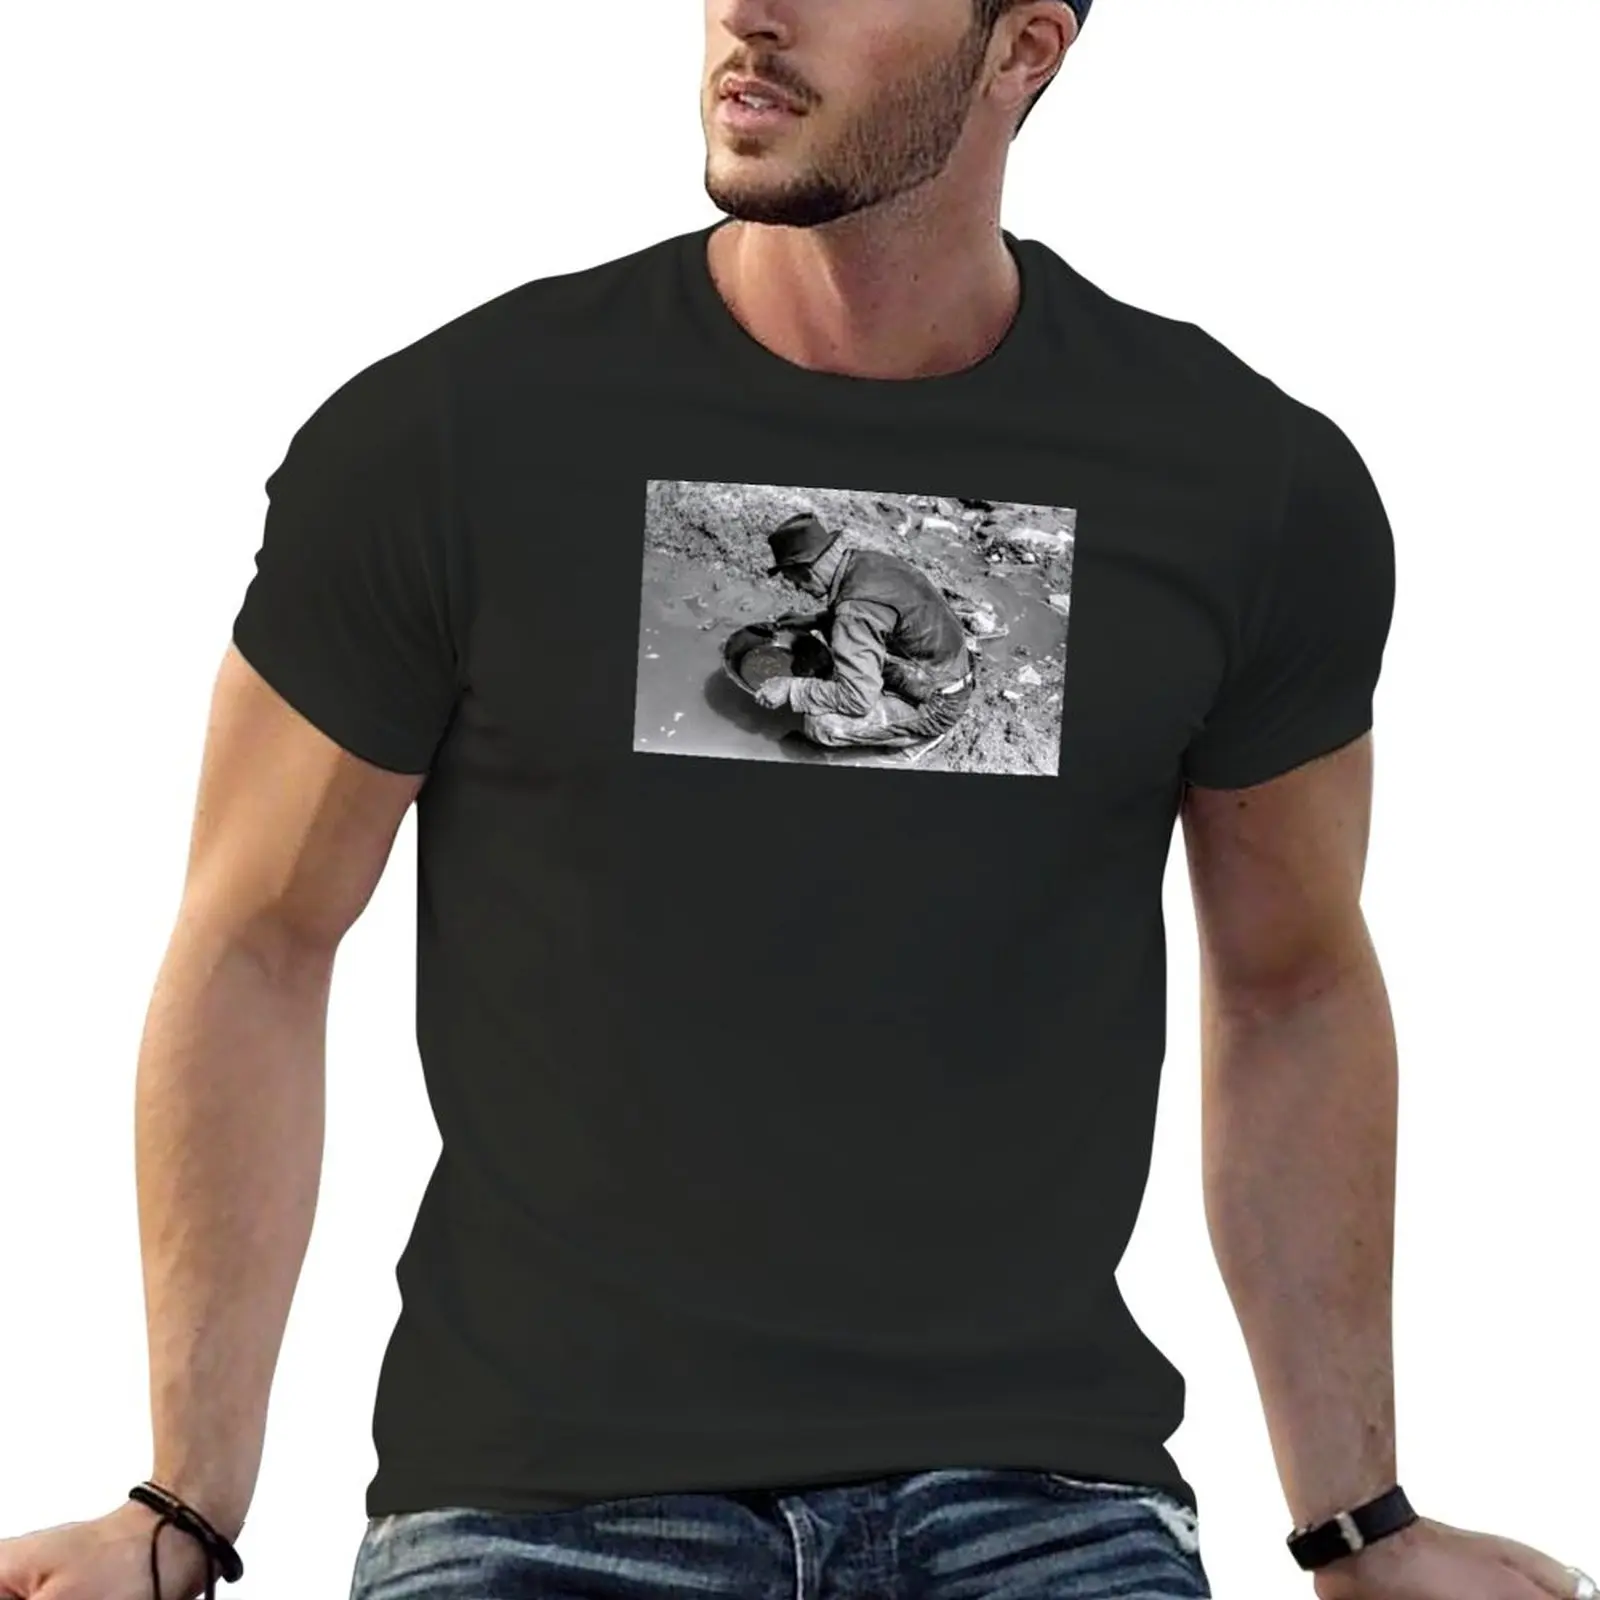 Новая футболка Мечты золотоискателя, милая одежда, футболки в тяжелом весе, черные футболки, футболки для мужчин, упаковка